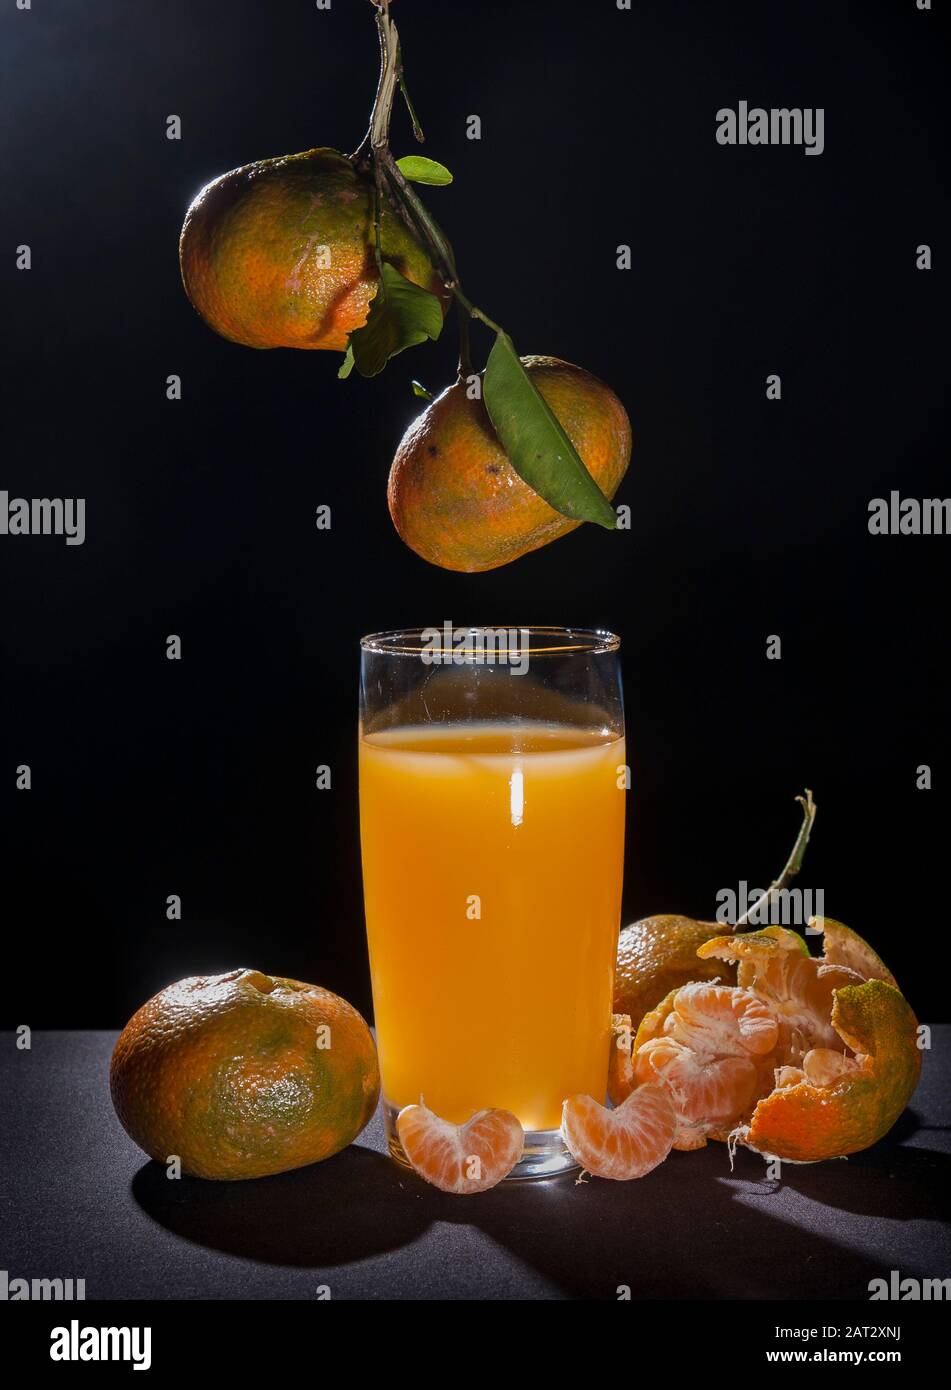 mandarina y vidrio, cítricos reticula.sobre mesa con fondo negro y luz de fondo vida fija.mandarina variedad naranja contiene pomelo y c vi Foto de stock